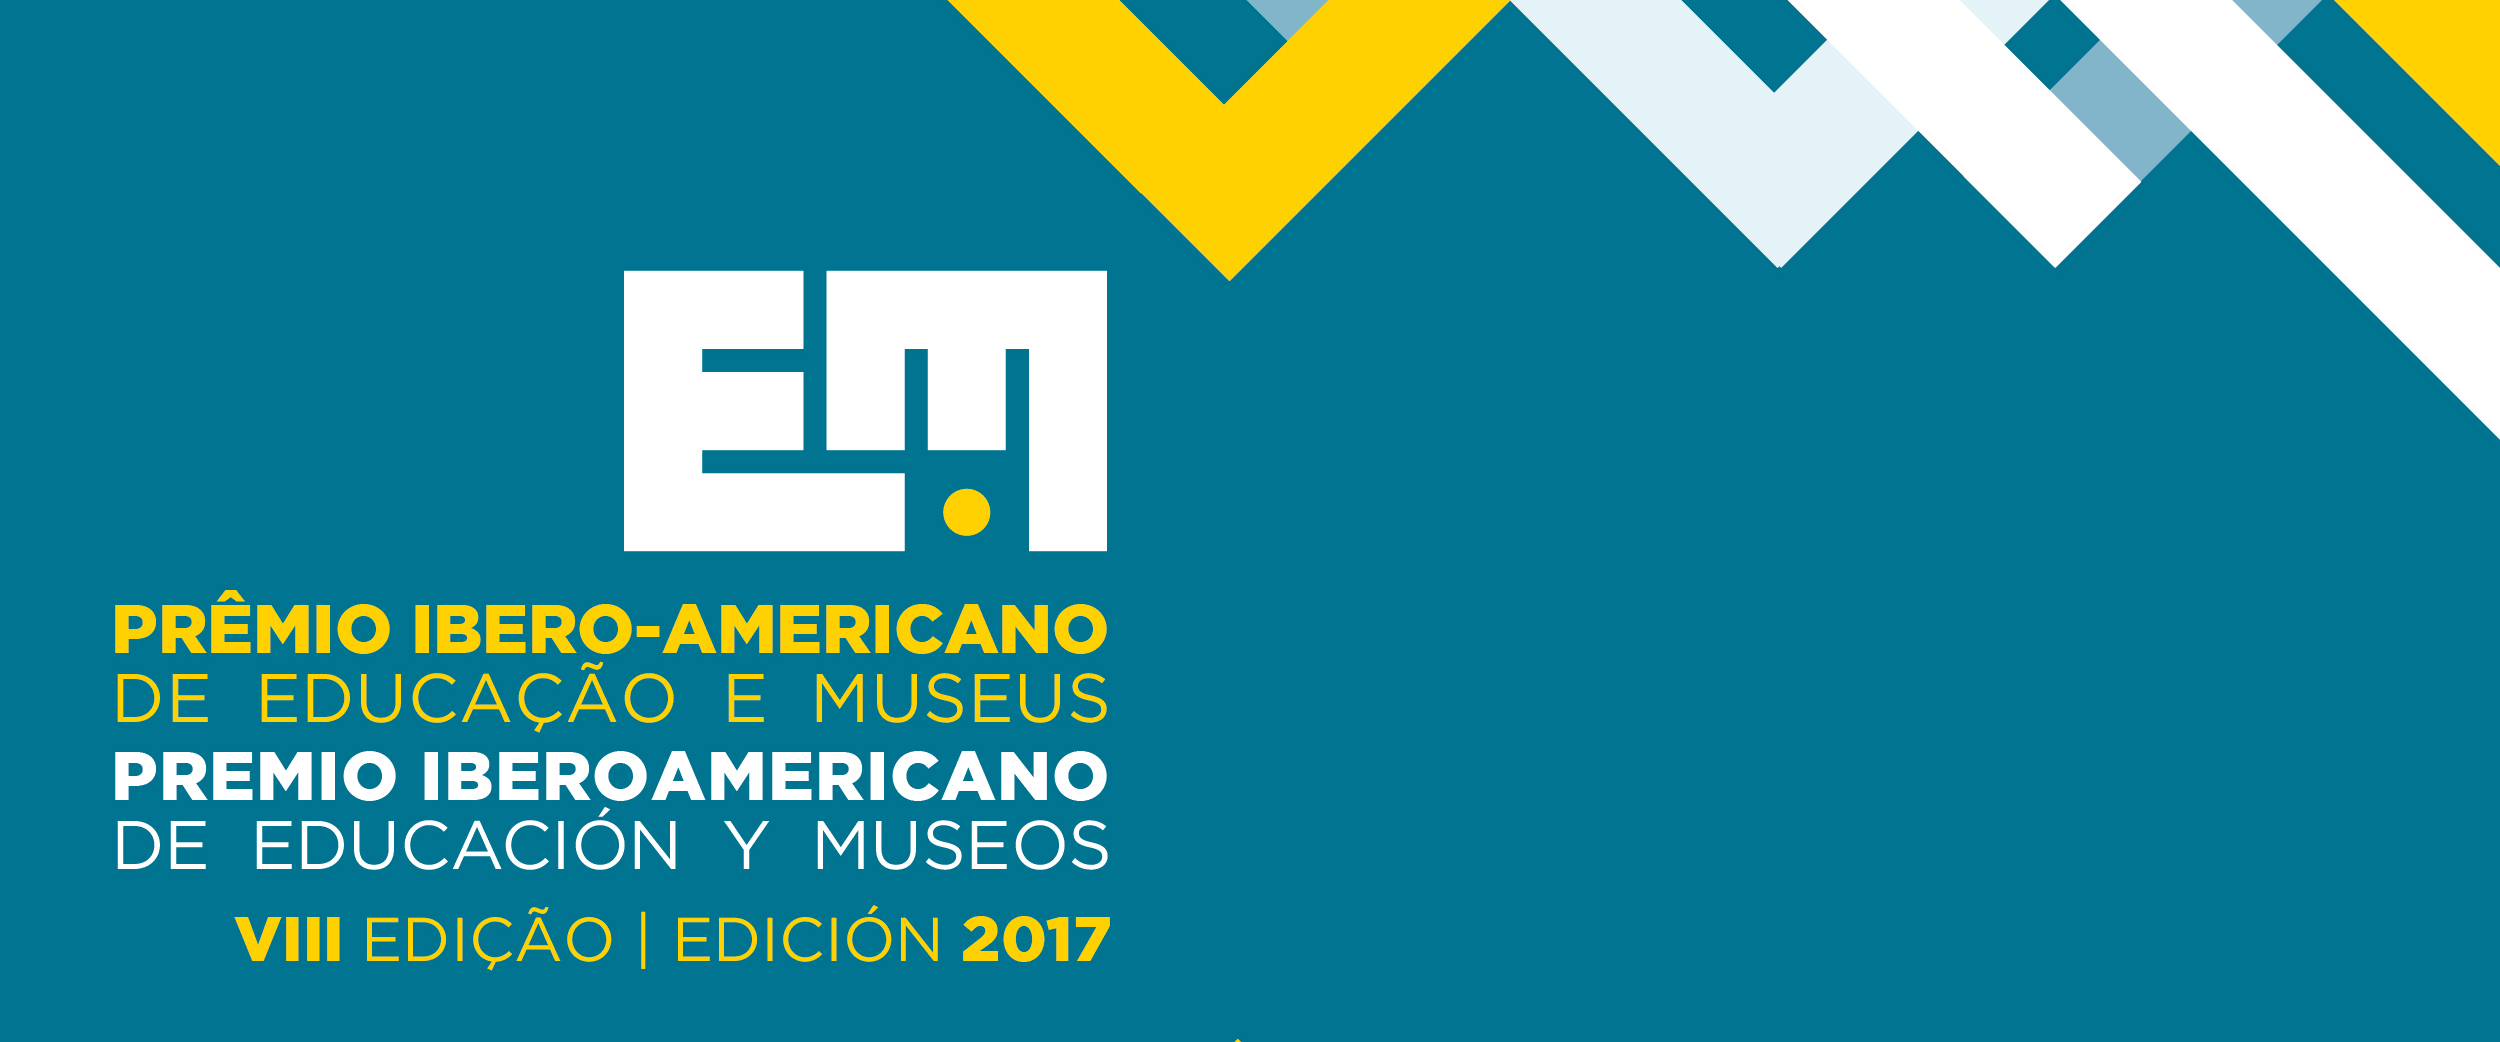 Premio Iberoamericano de Educación y Museos 2017